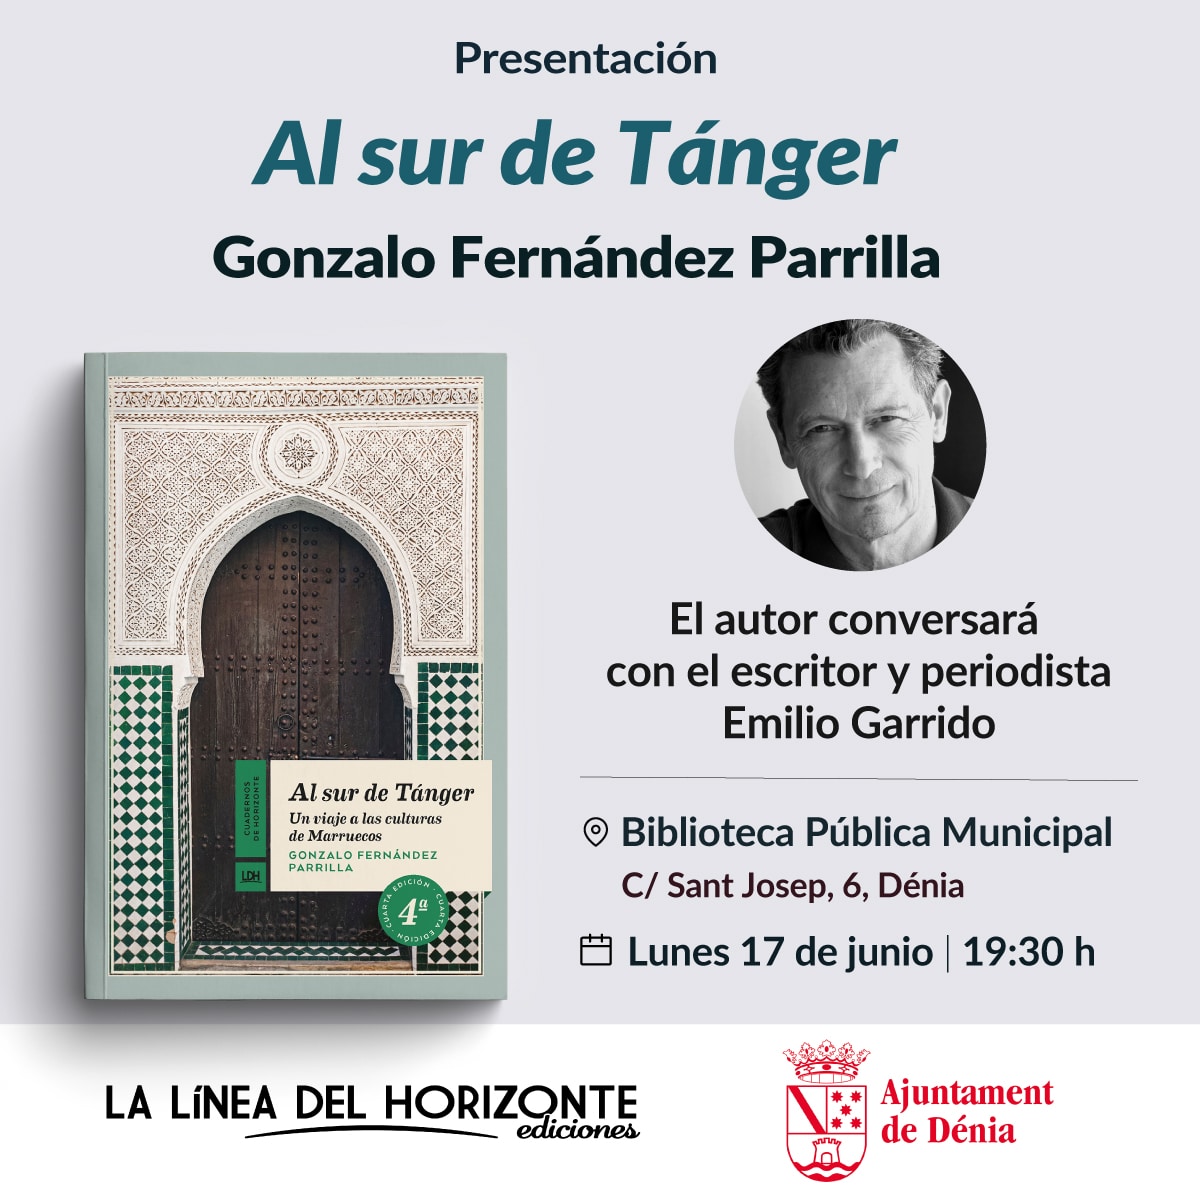 Presentación del libro: Al sur de Tanger